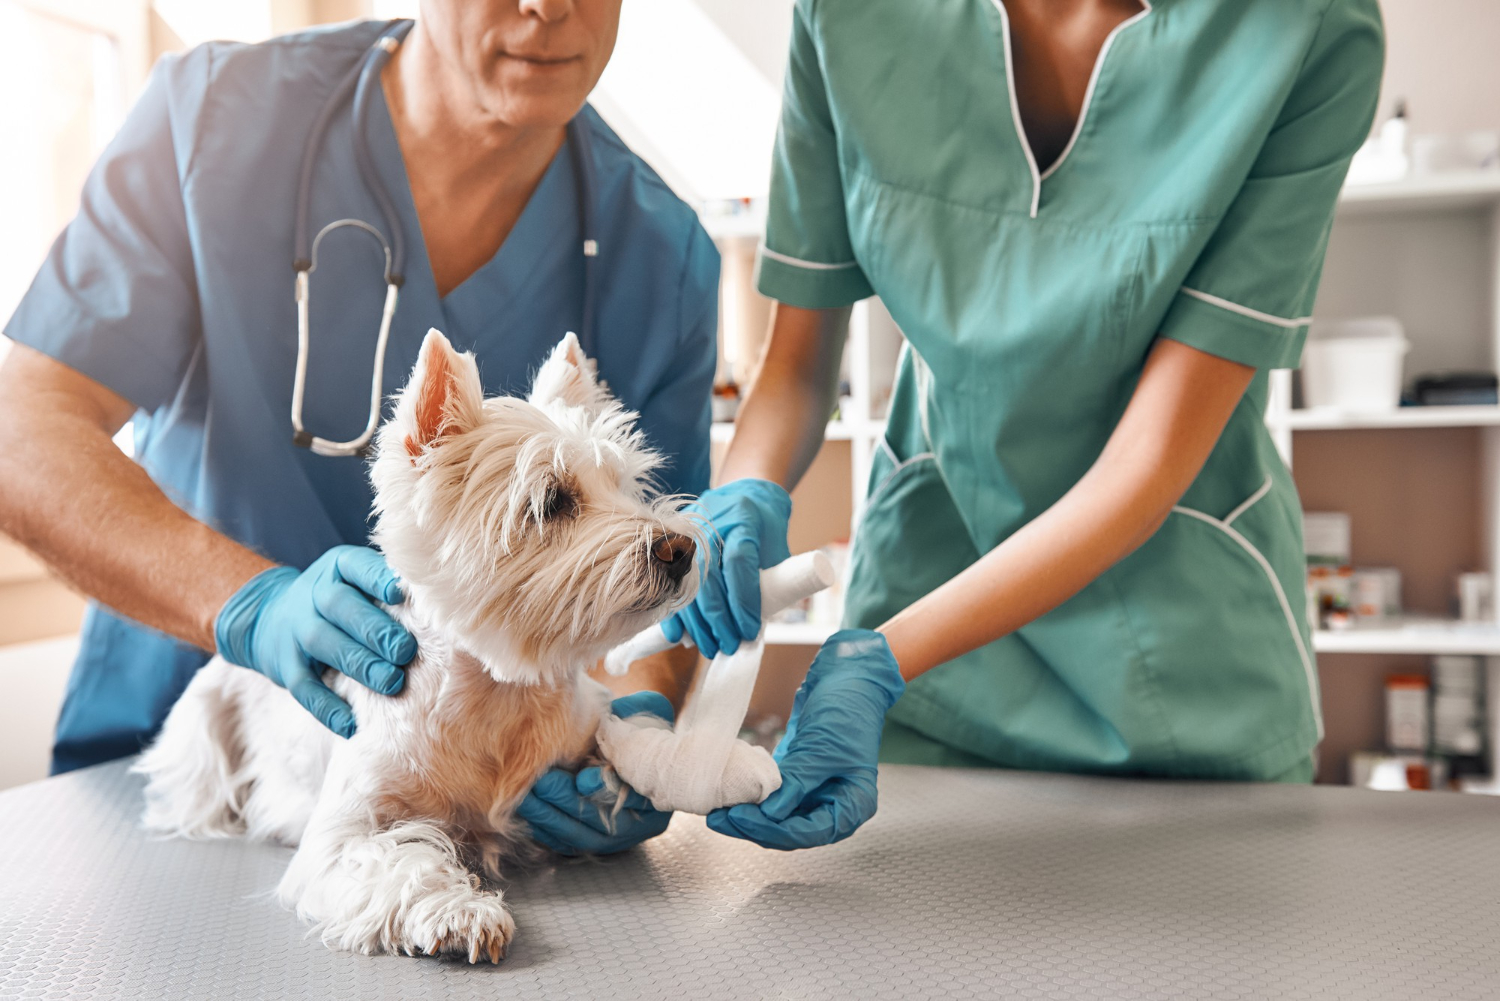 Certificado de auxiliar clínico de veterinaria: ¿cómo acreditarlo?